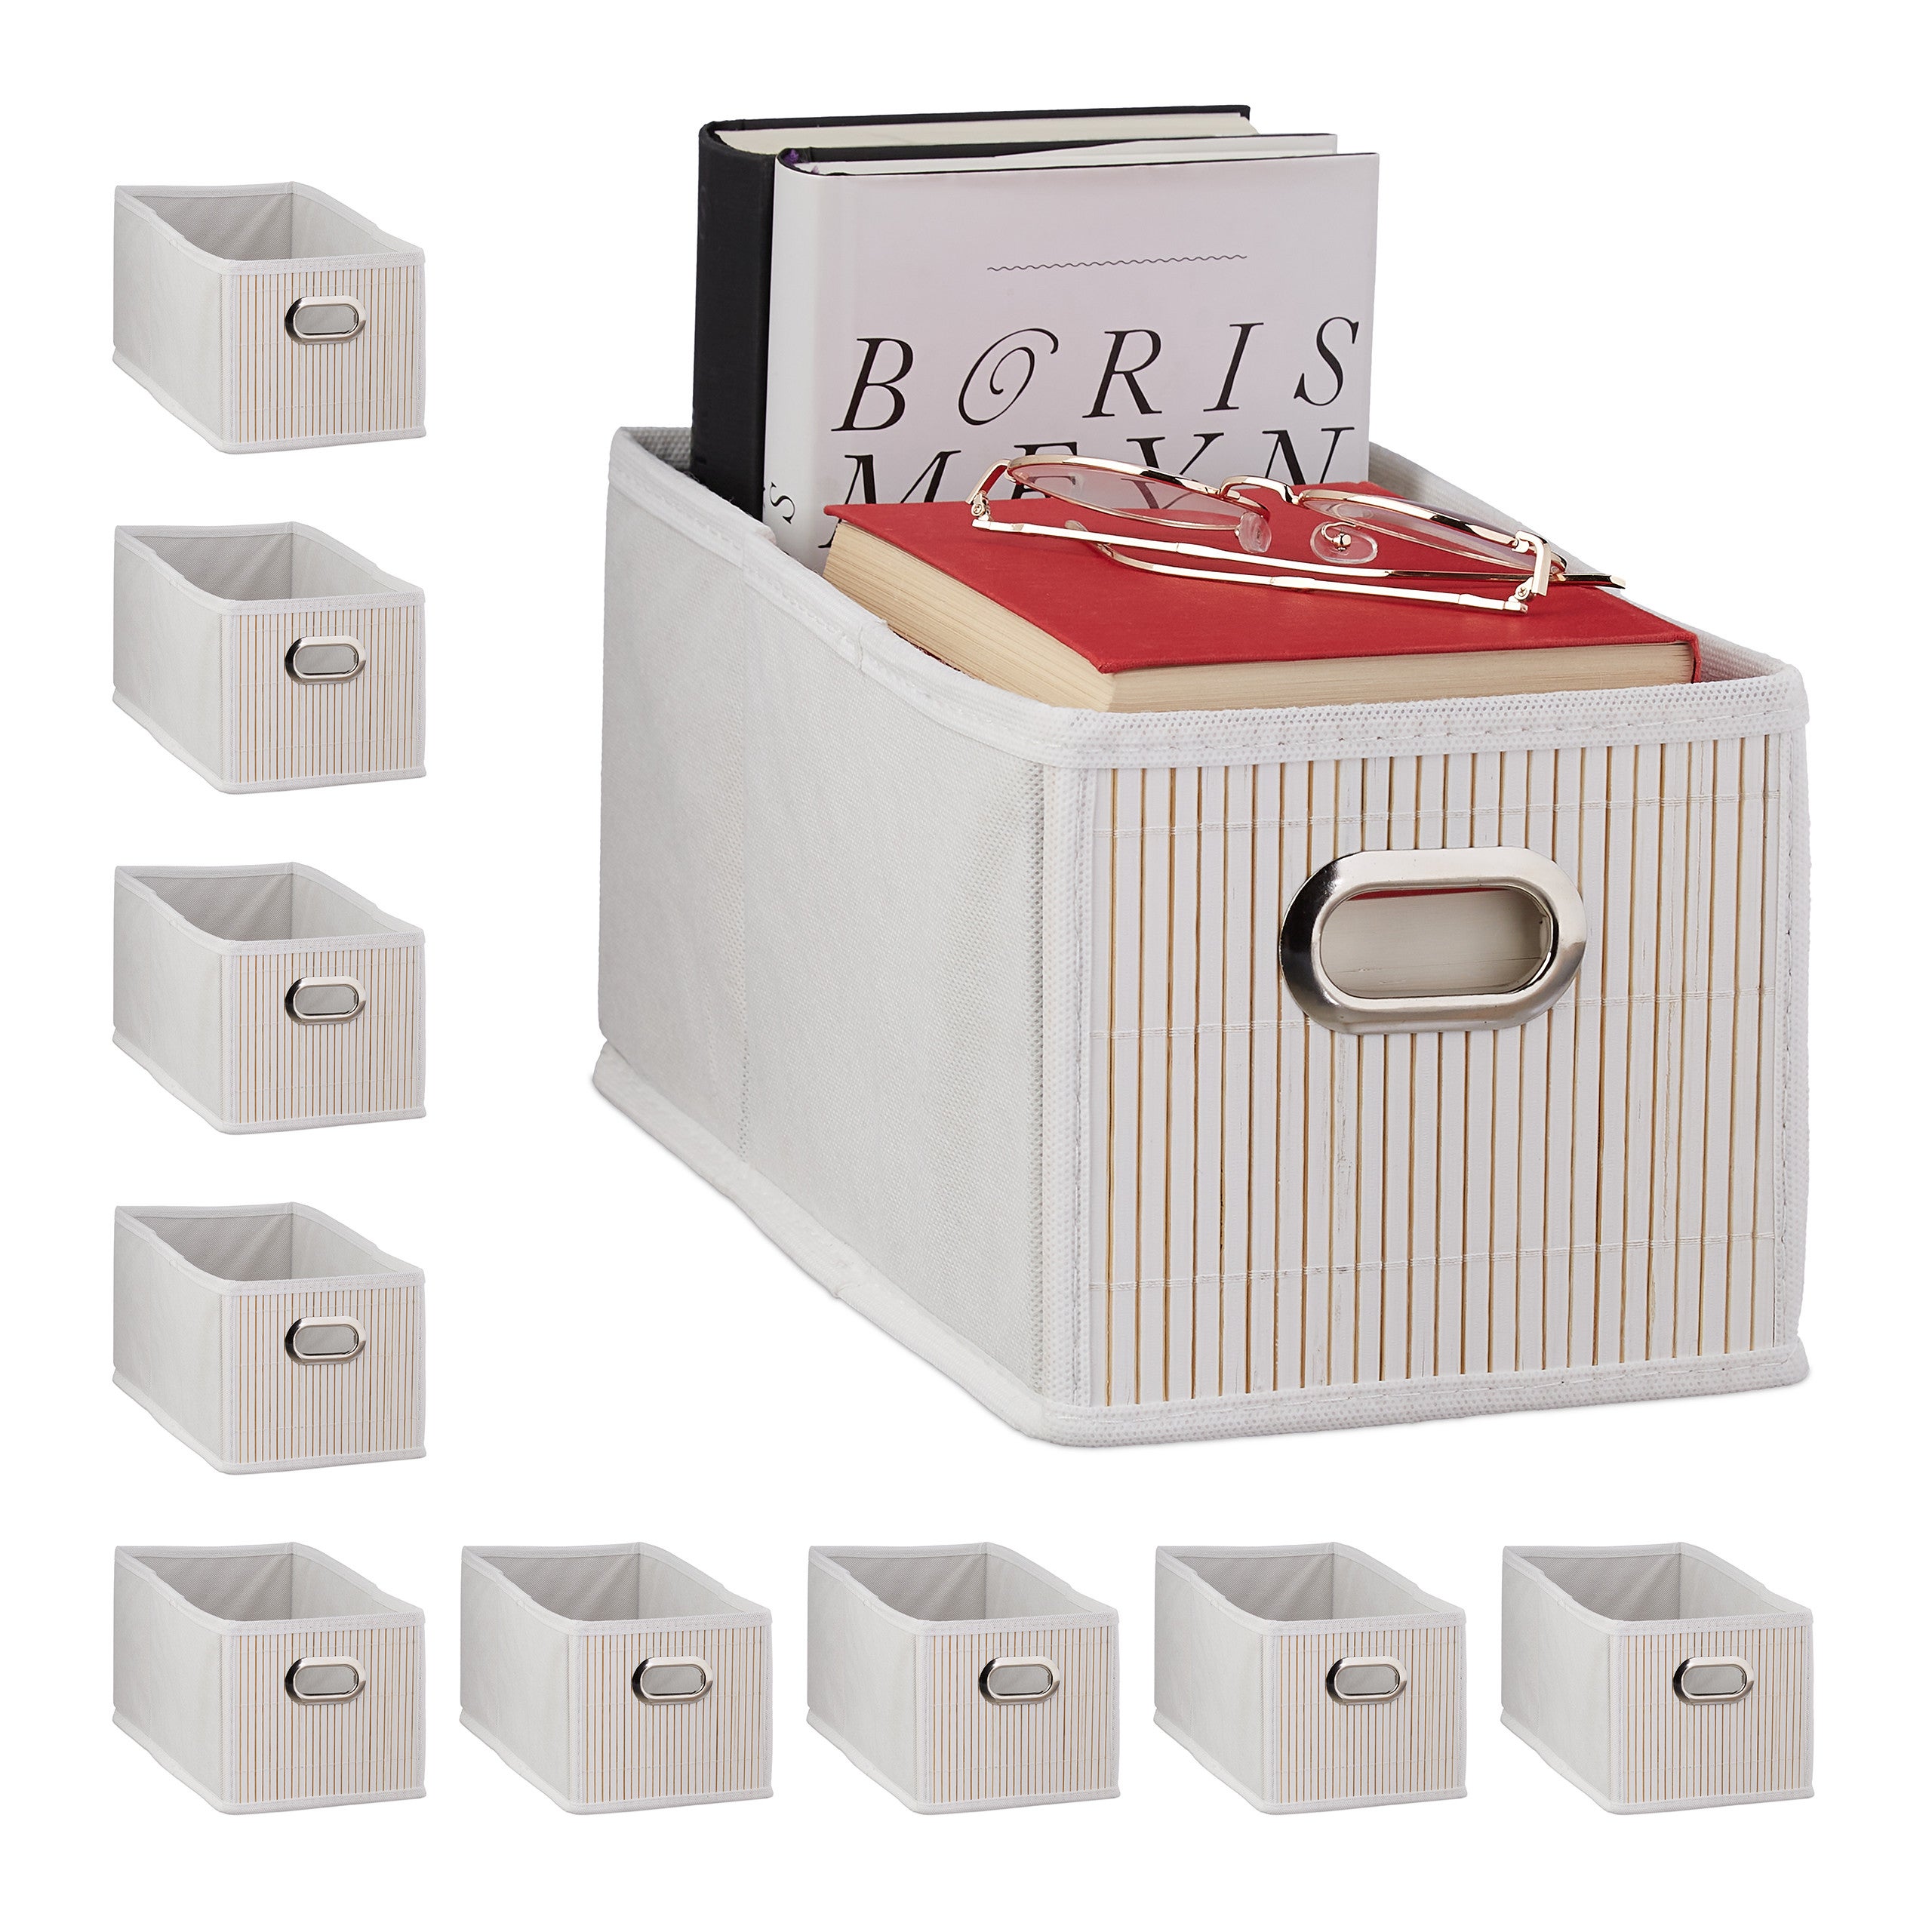 Scatola 1PLUS Set di 2 scatole portaoggetti quadrate in Tessuto 30 x 30 x 30 cm Grigio/Bianco Scatola Universale per lordine e la conservazione in Armadio o scaffale 30 x 30 x 30 cm 